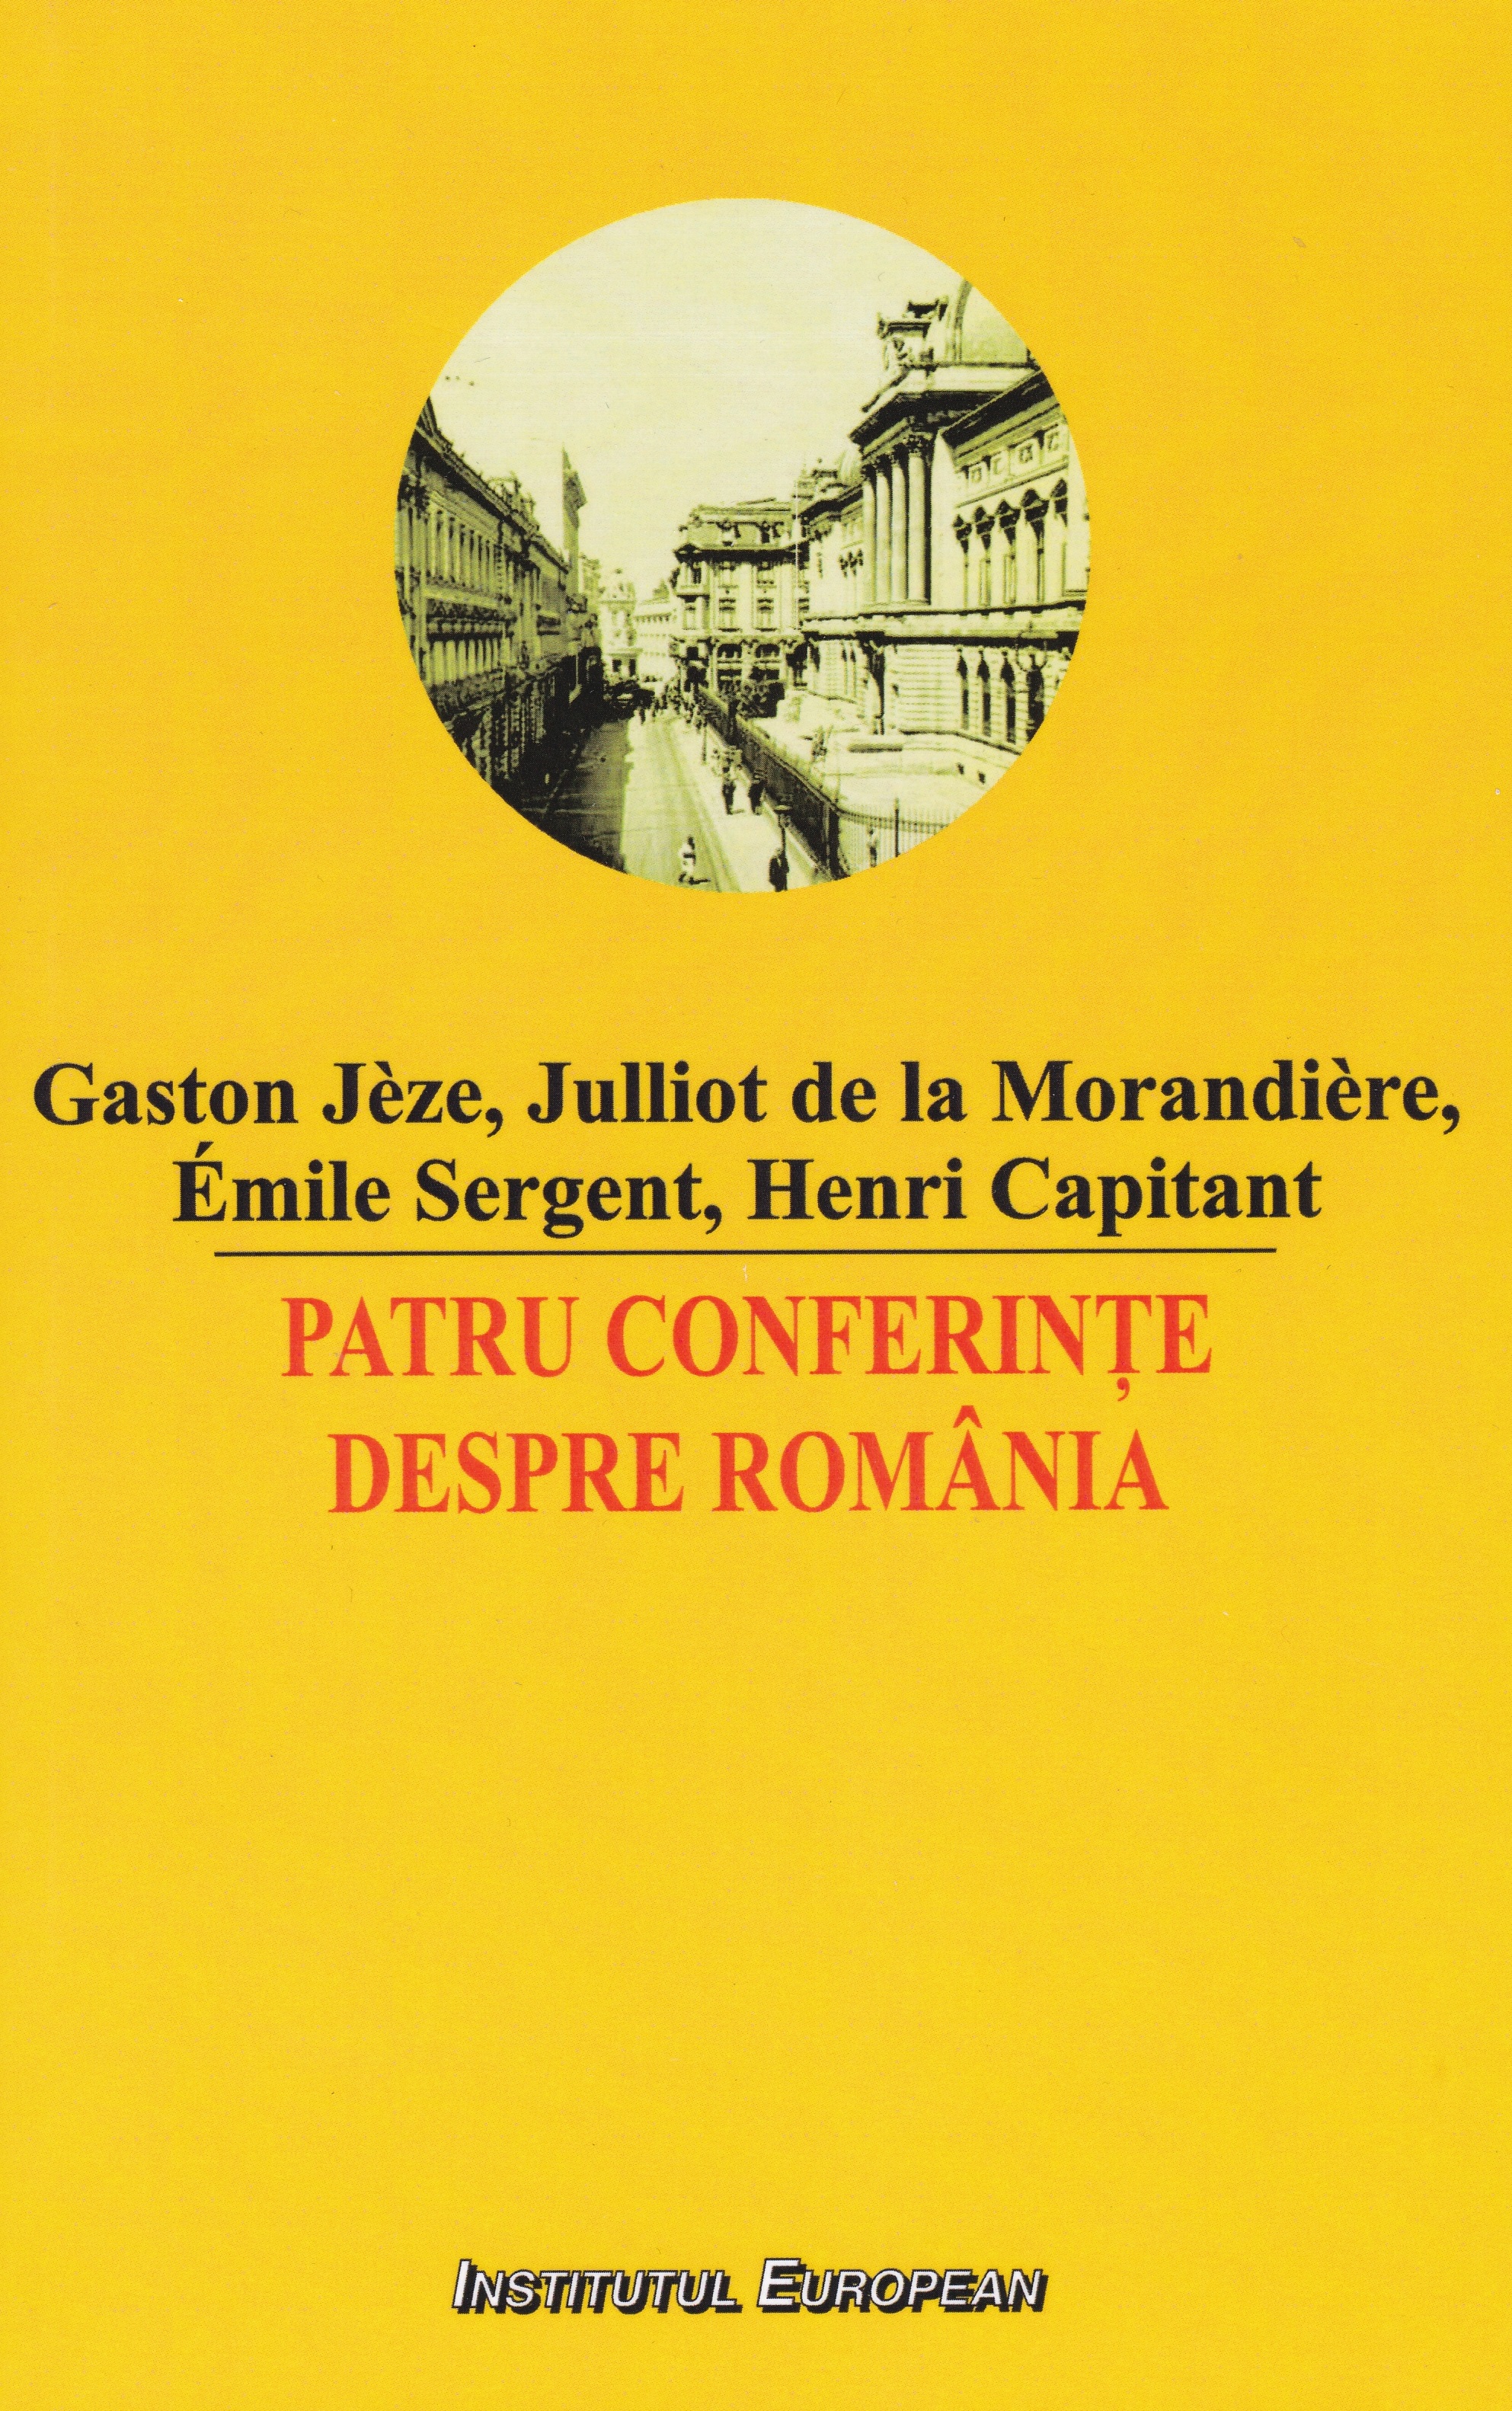 Patru conferinte despre Romania - Gaston Jeze, Julliot de la Morandiere, Emile Sergent